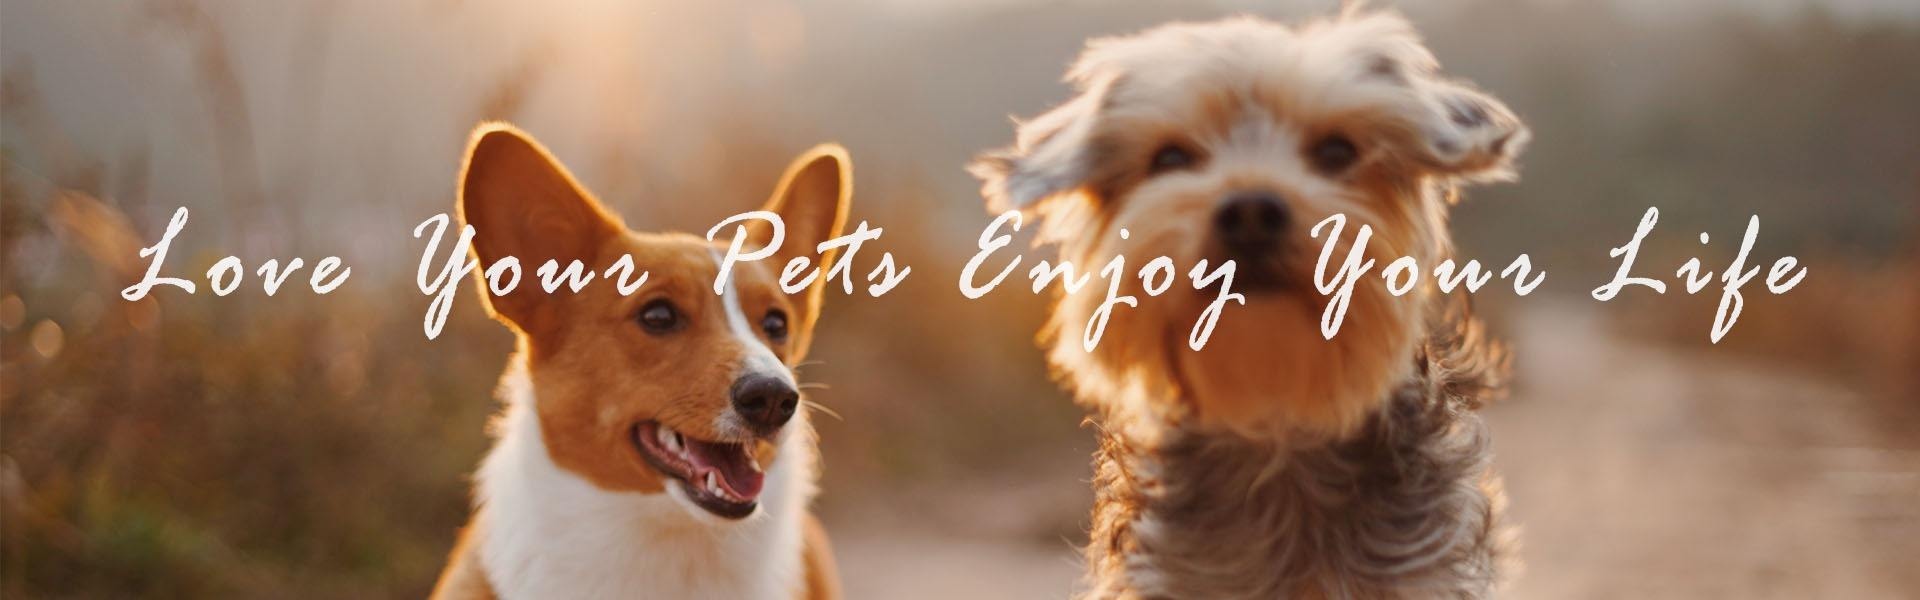 애완 동물 제품, 애완 동물 액세서리, 애완 동물 용품,Furjoyz Pet Products Co., Ltd